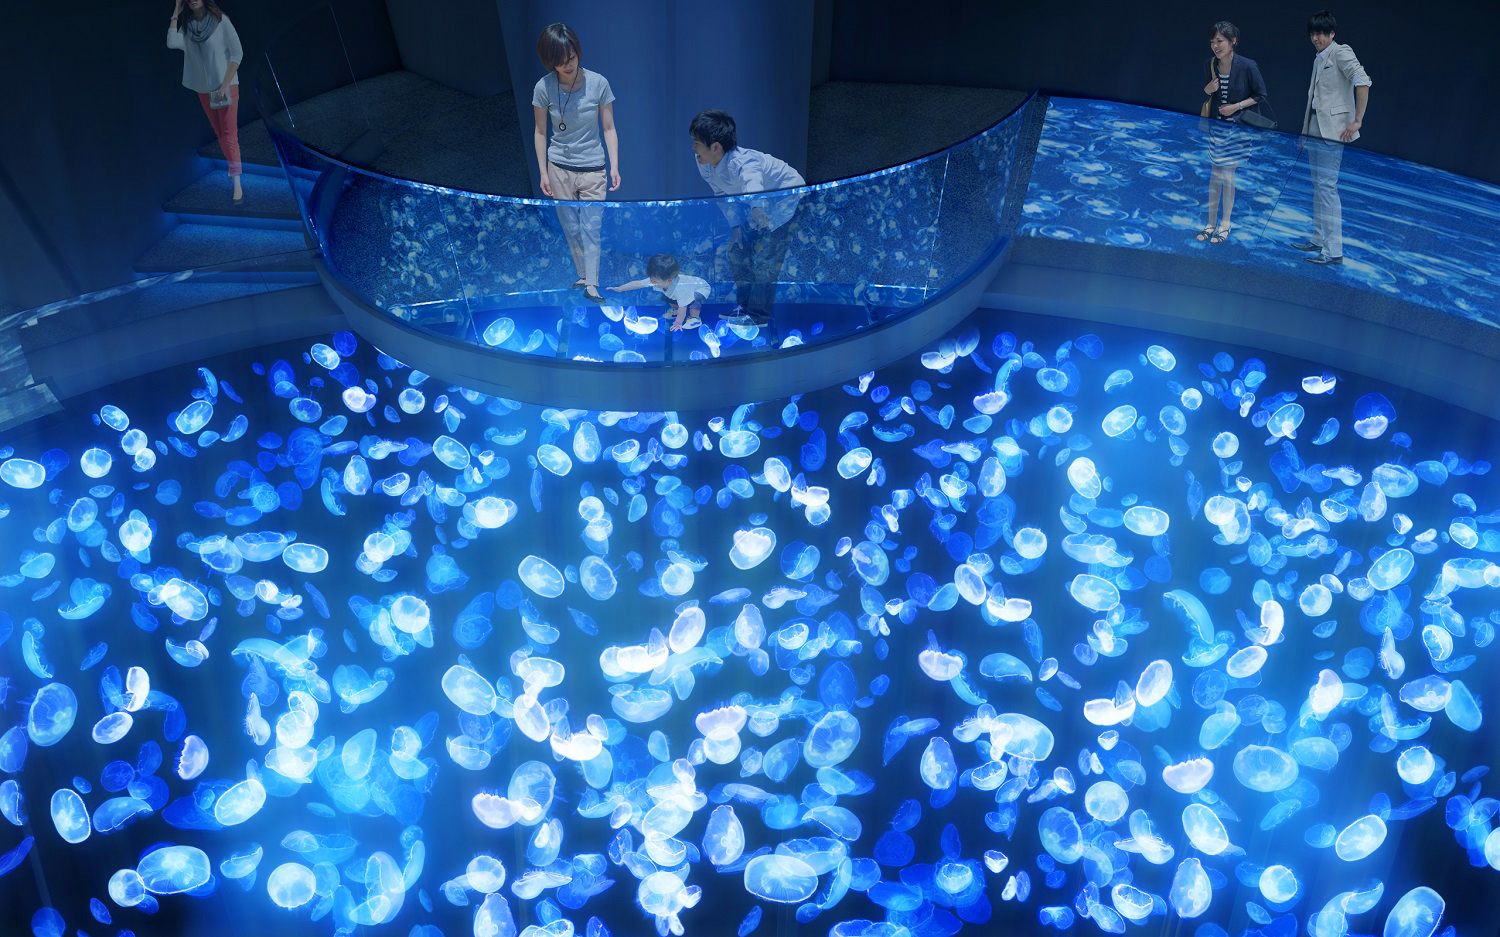 すみだ水族館7 16 木 リニューアルオープン 新体感水槽 ビッグシャーレ や飼育が見れる アクアベース など誕生 Emo Miu エモミュー